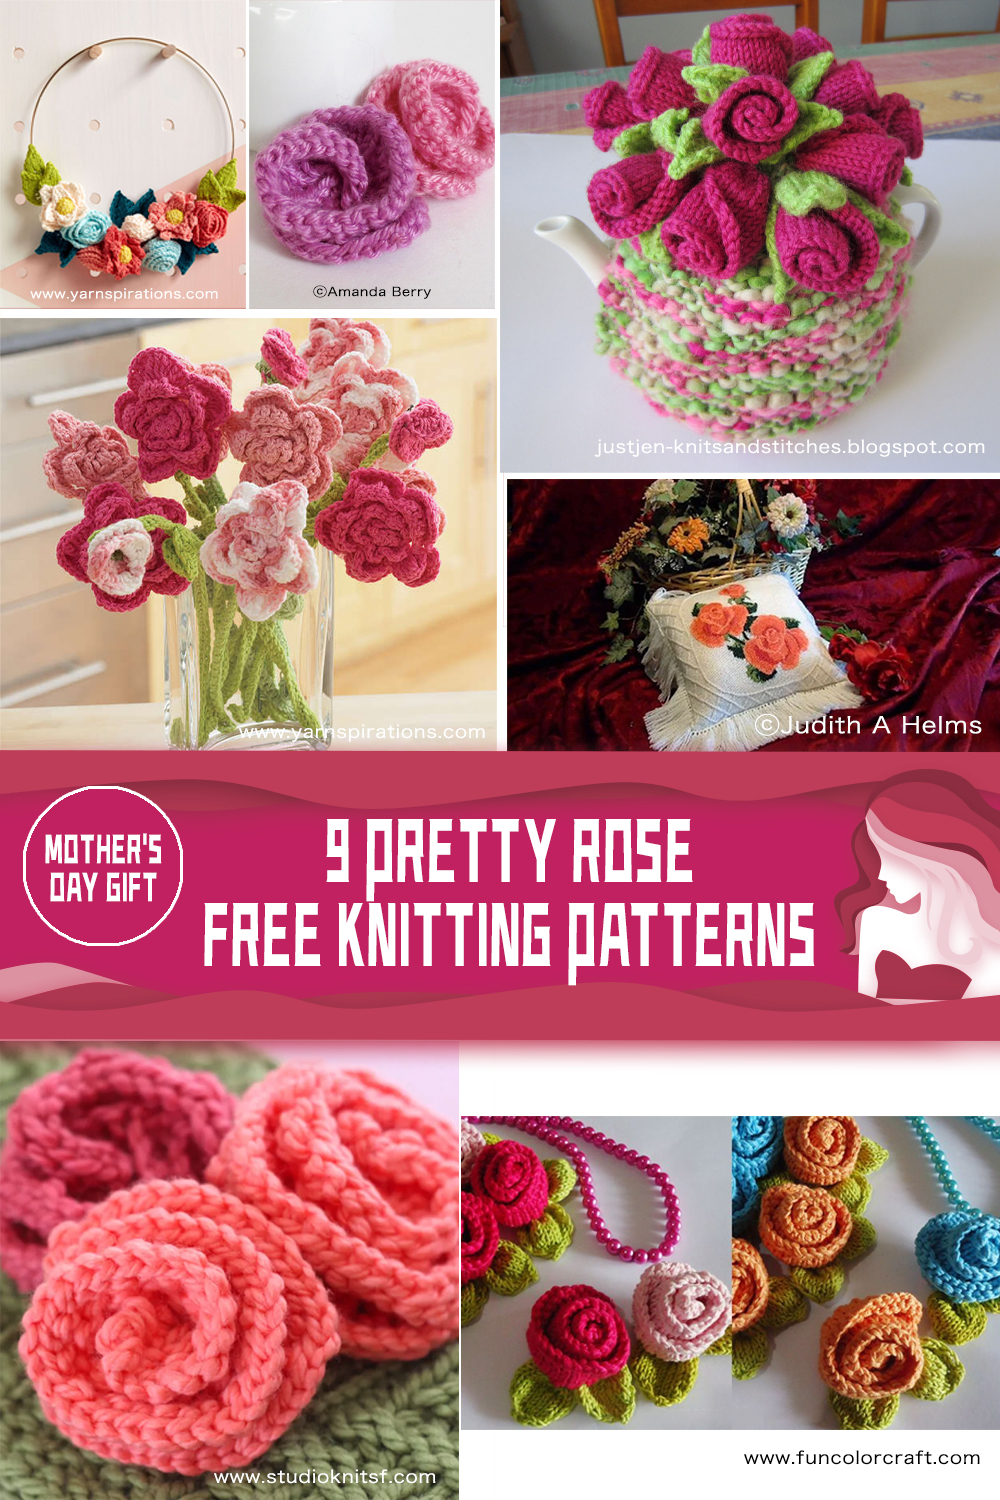 9 Pretty Rose FREE Knitting Patterns